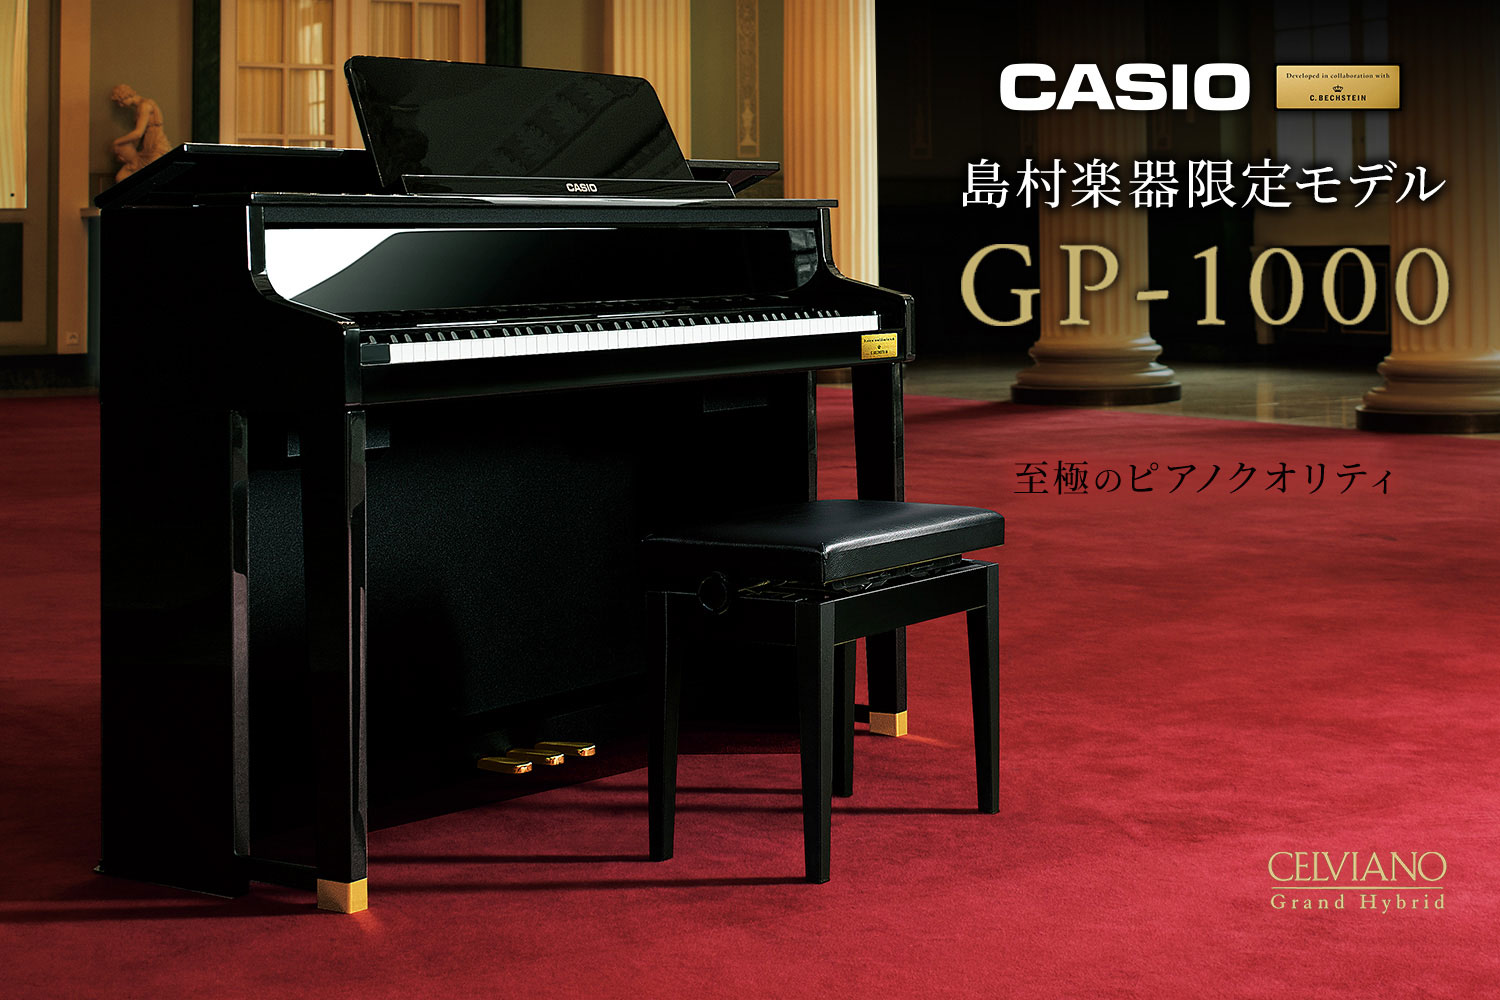 CASIO×C.ベヒシュタイン コラボレーション電子ピアノに島村楽器限定モデル「GP-1000」のご紹介。